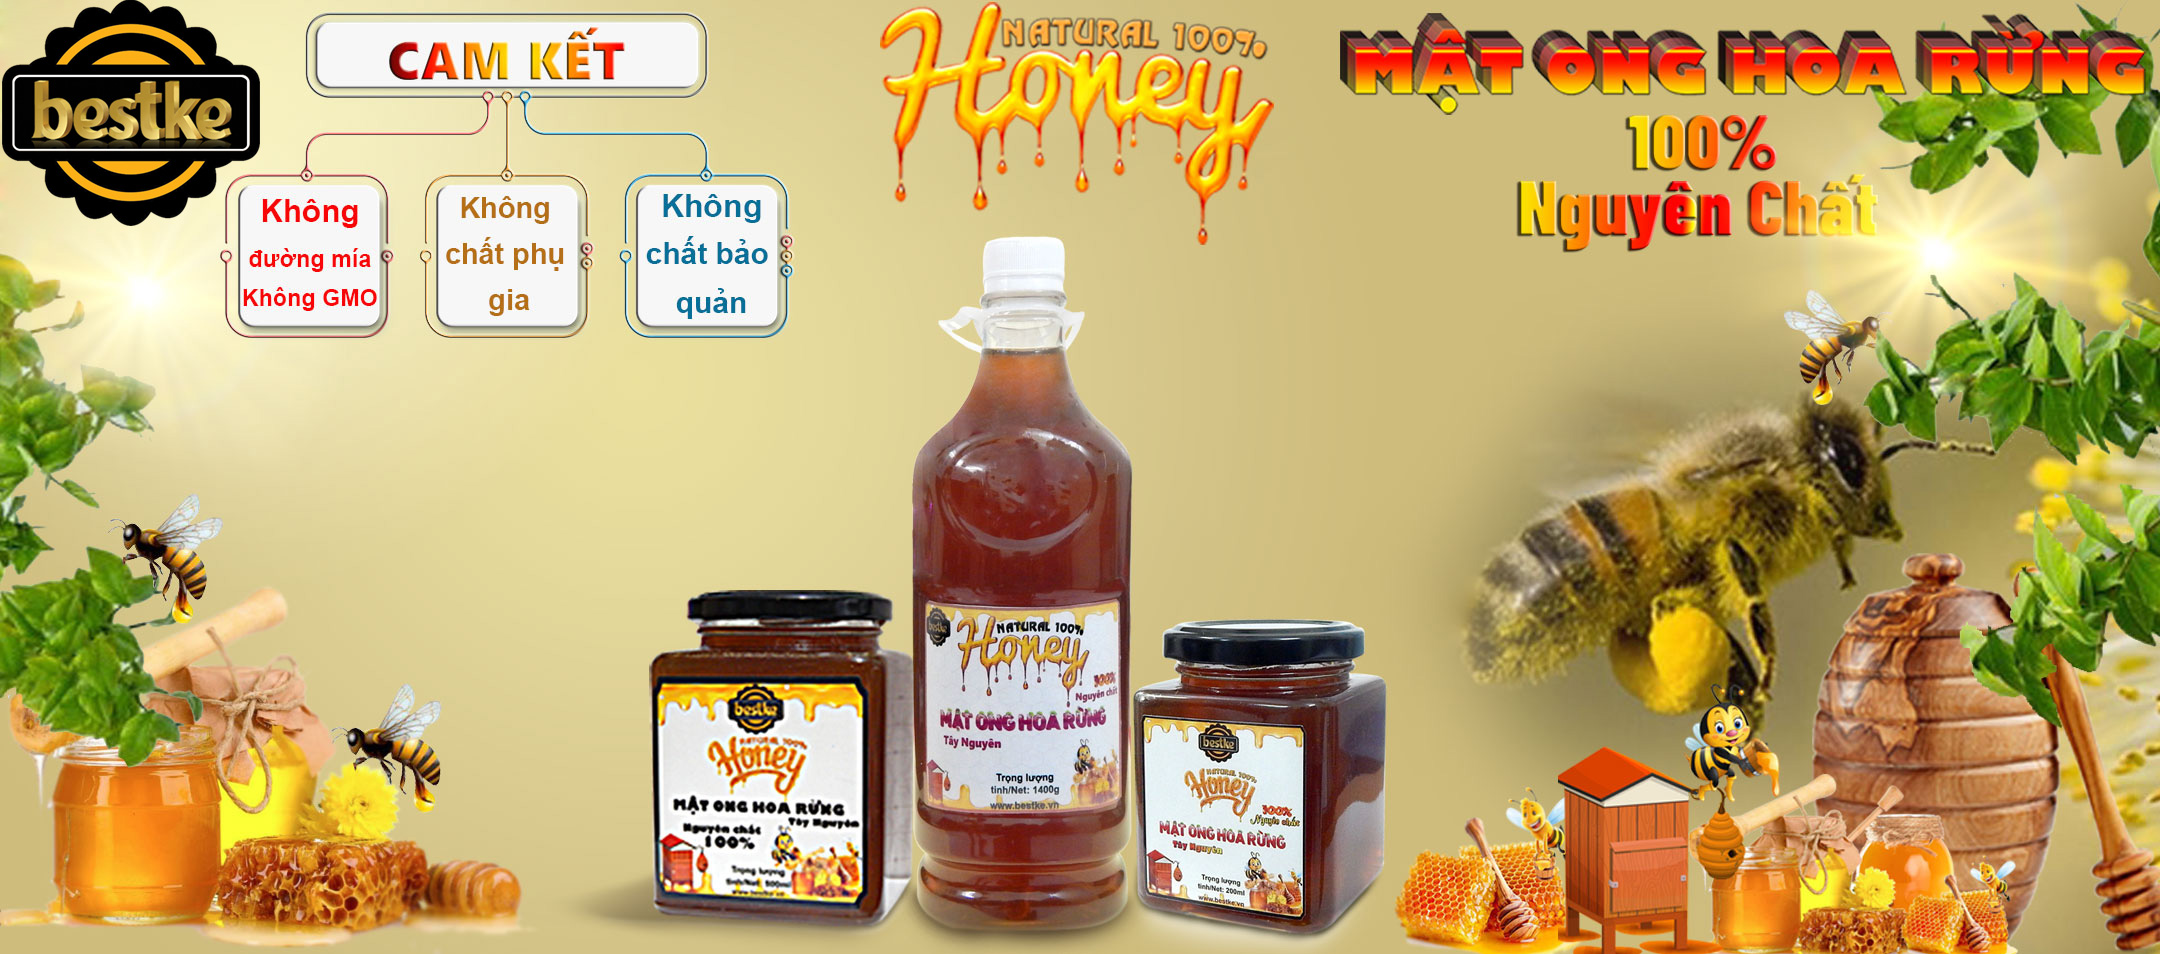 bestke mật ong hoa rừng nguyên chất 100%, combo 5 hũ, mỗi hũ 200ml, honey natural bestke